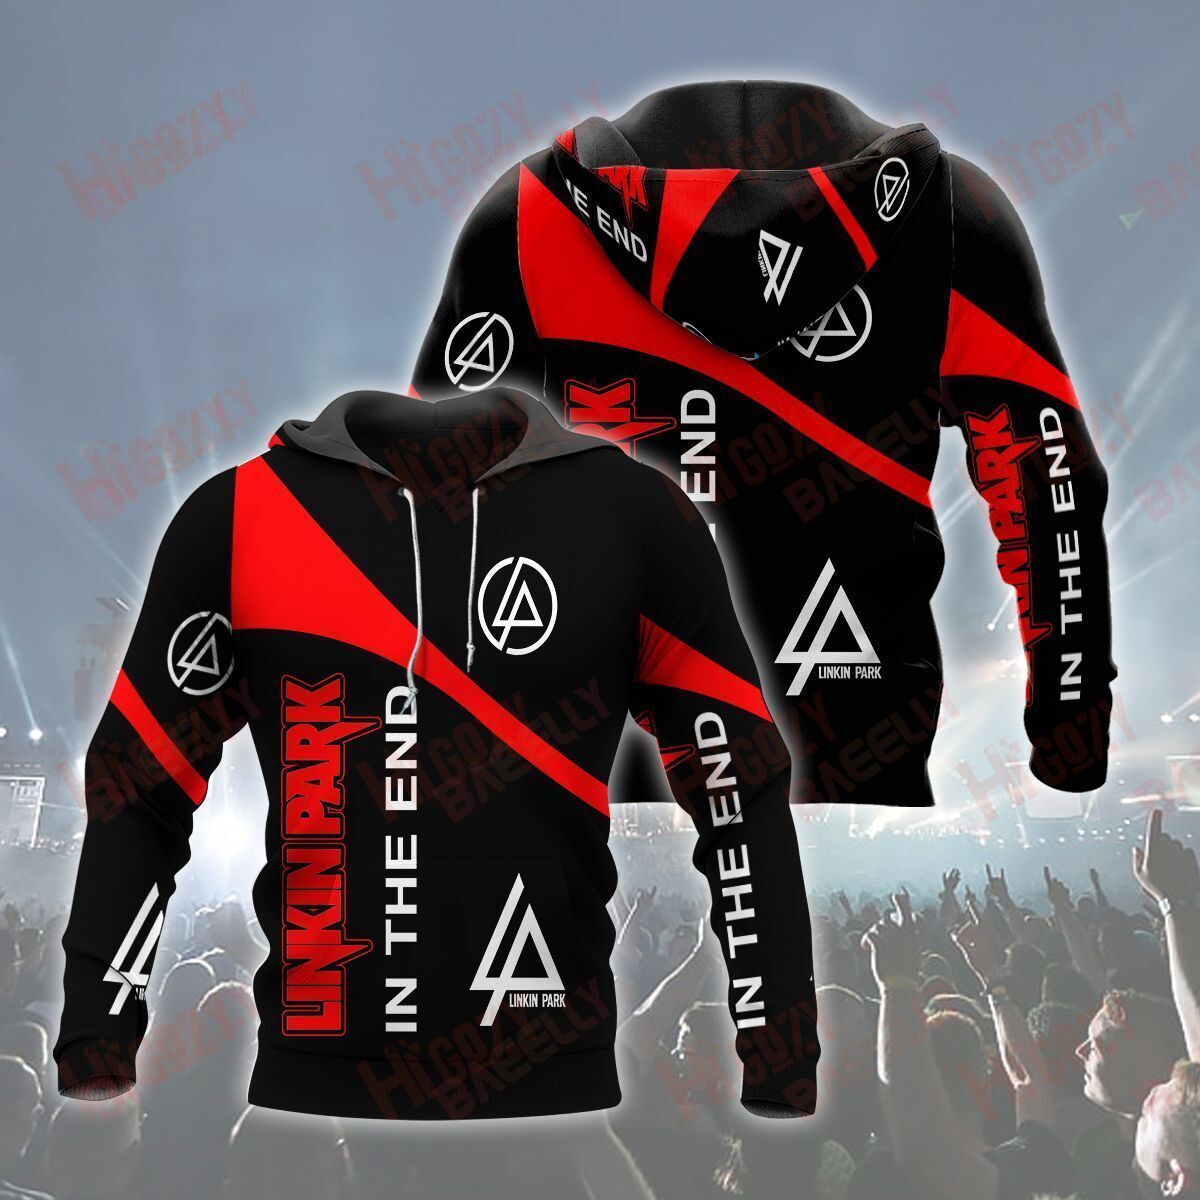 Linkin Park Customized Red Black Hoodies Clothes Zip Hoodie Comfy Hoodie, Hoodies For Men Women